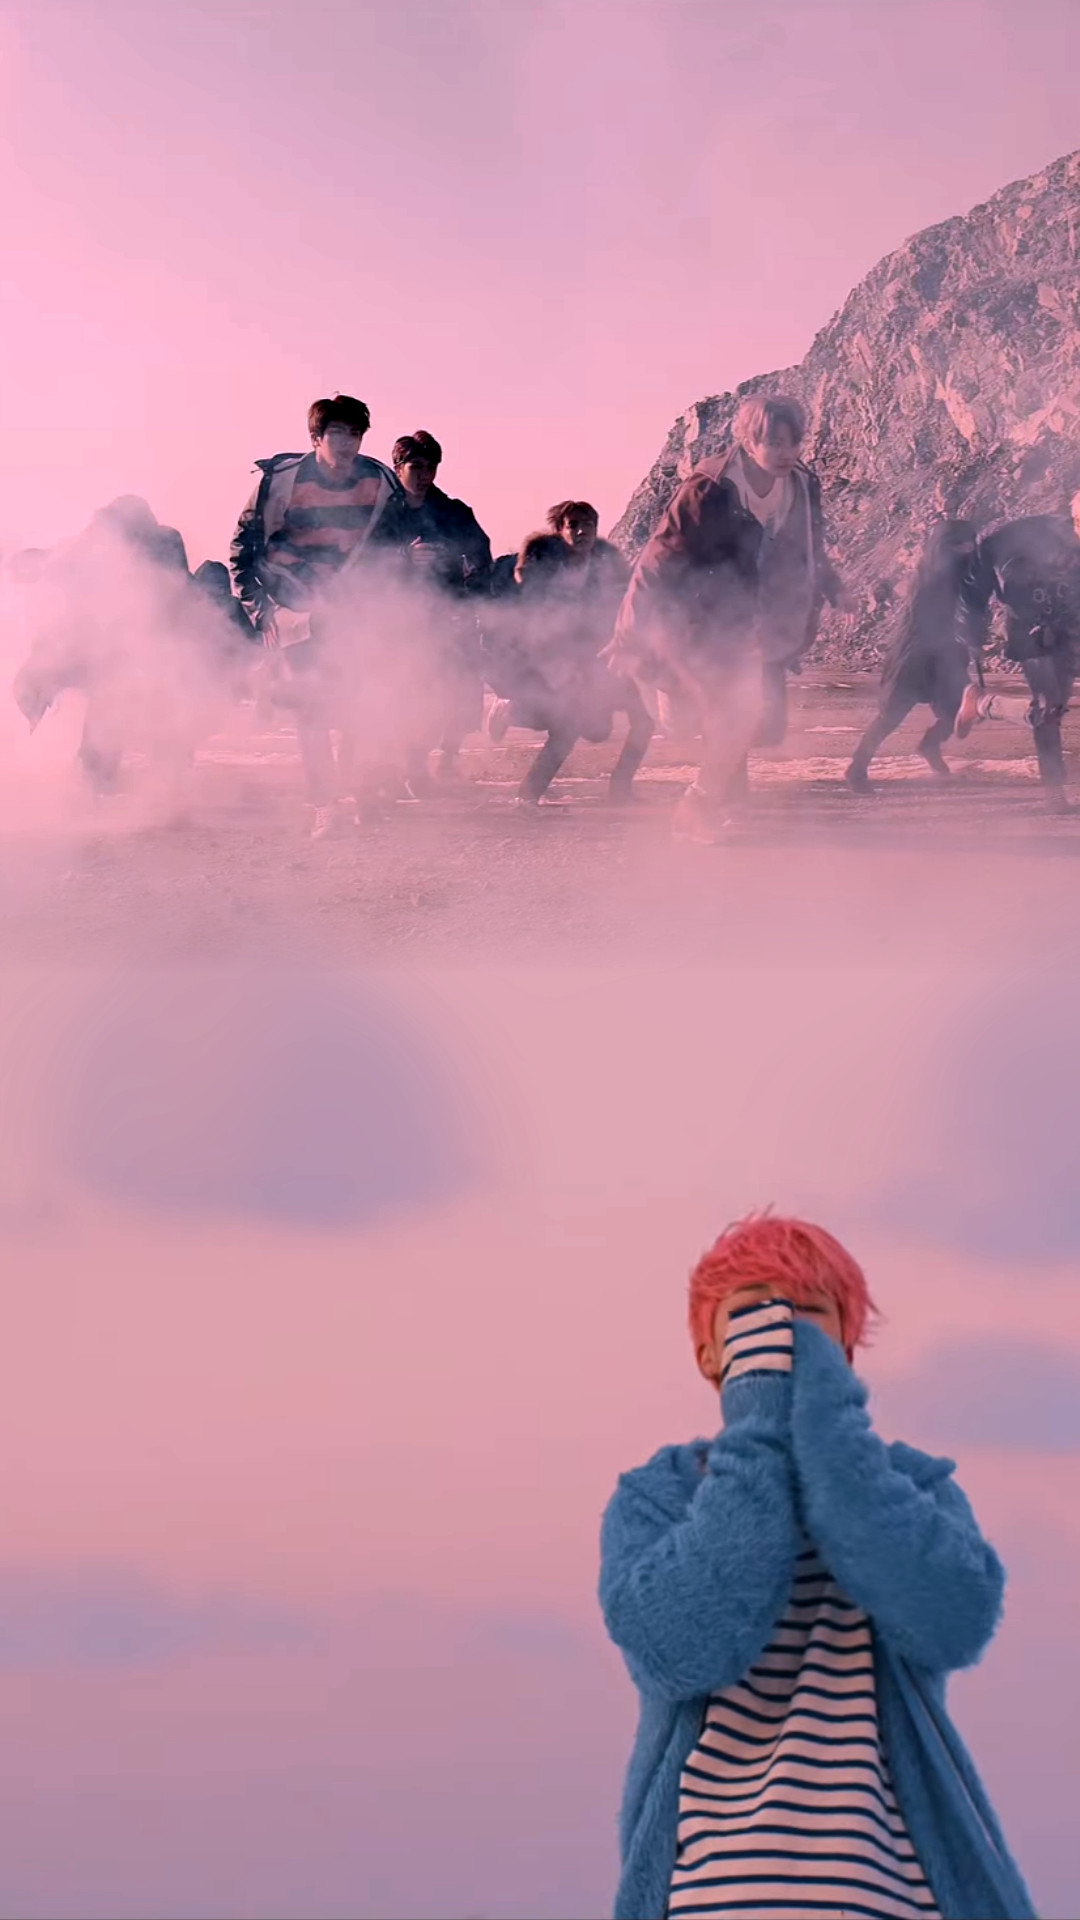 bts tumblr壁紙,空,雲,ピンク,図,風景